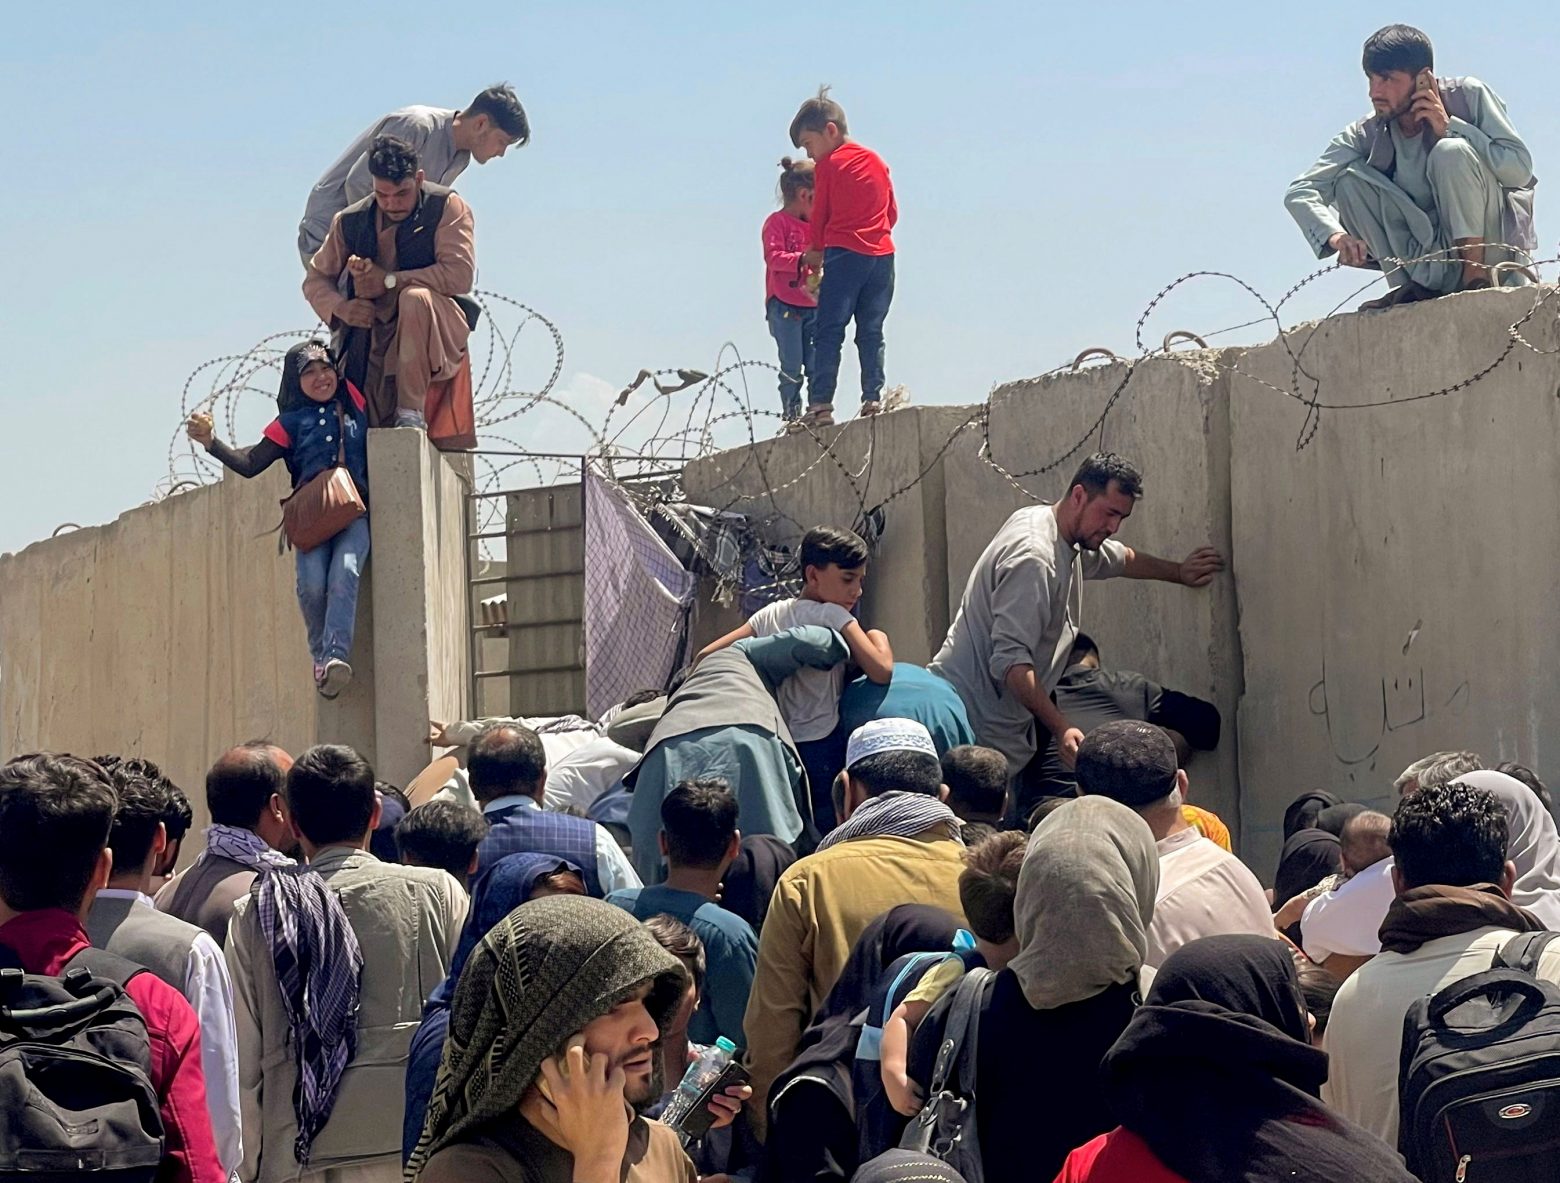 Σασόλι για Αφγανιστάν - Nα εξασφαλιστεί άσυλο σε όσους εγκαταλείπουν τη χώρα και κινδυνεύουν να διωχθούν